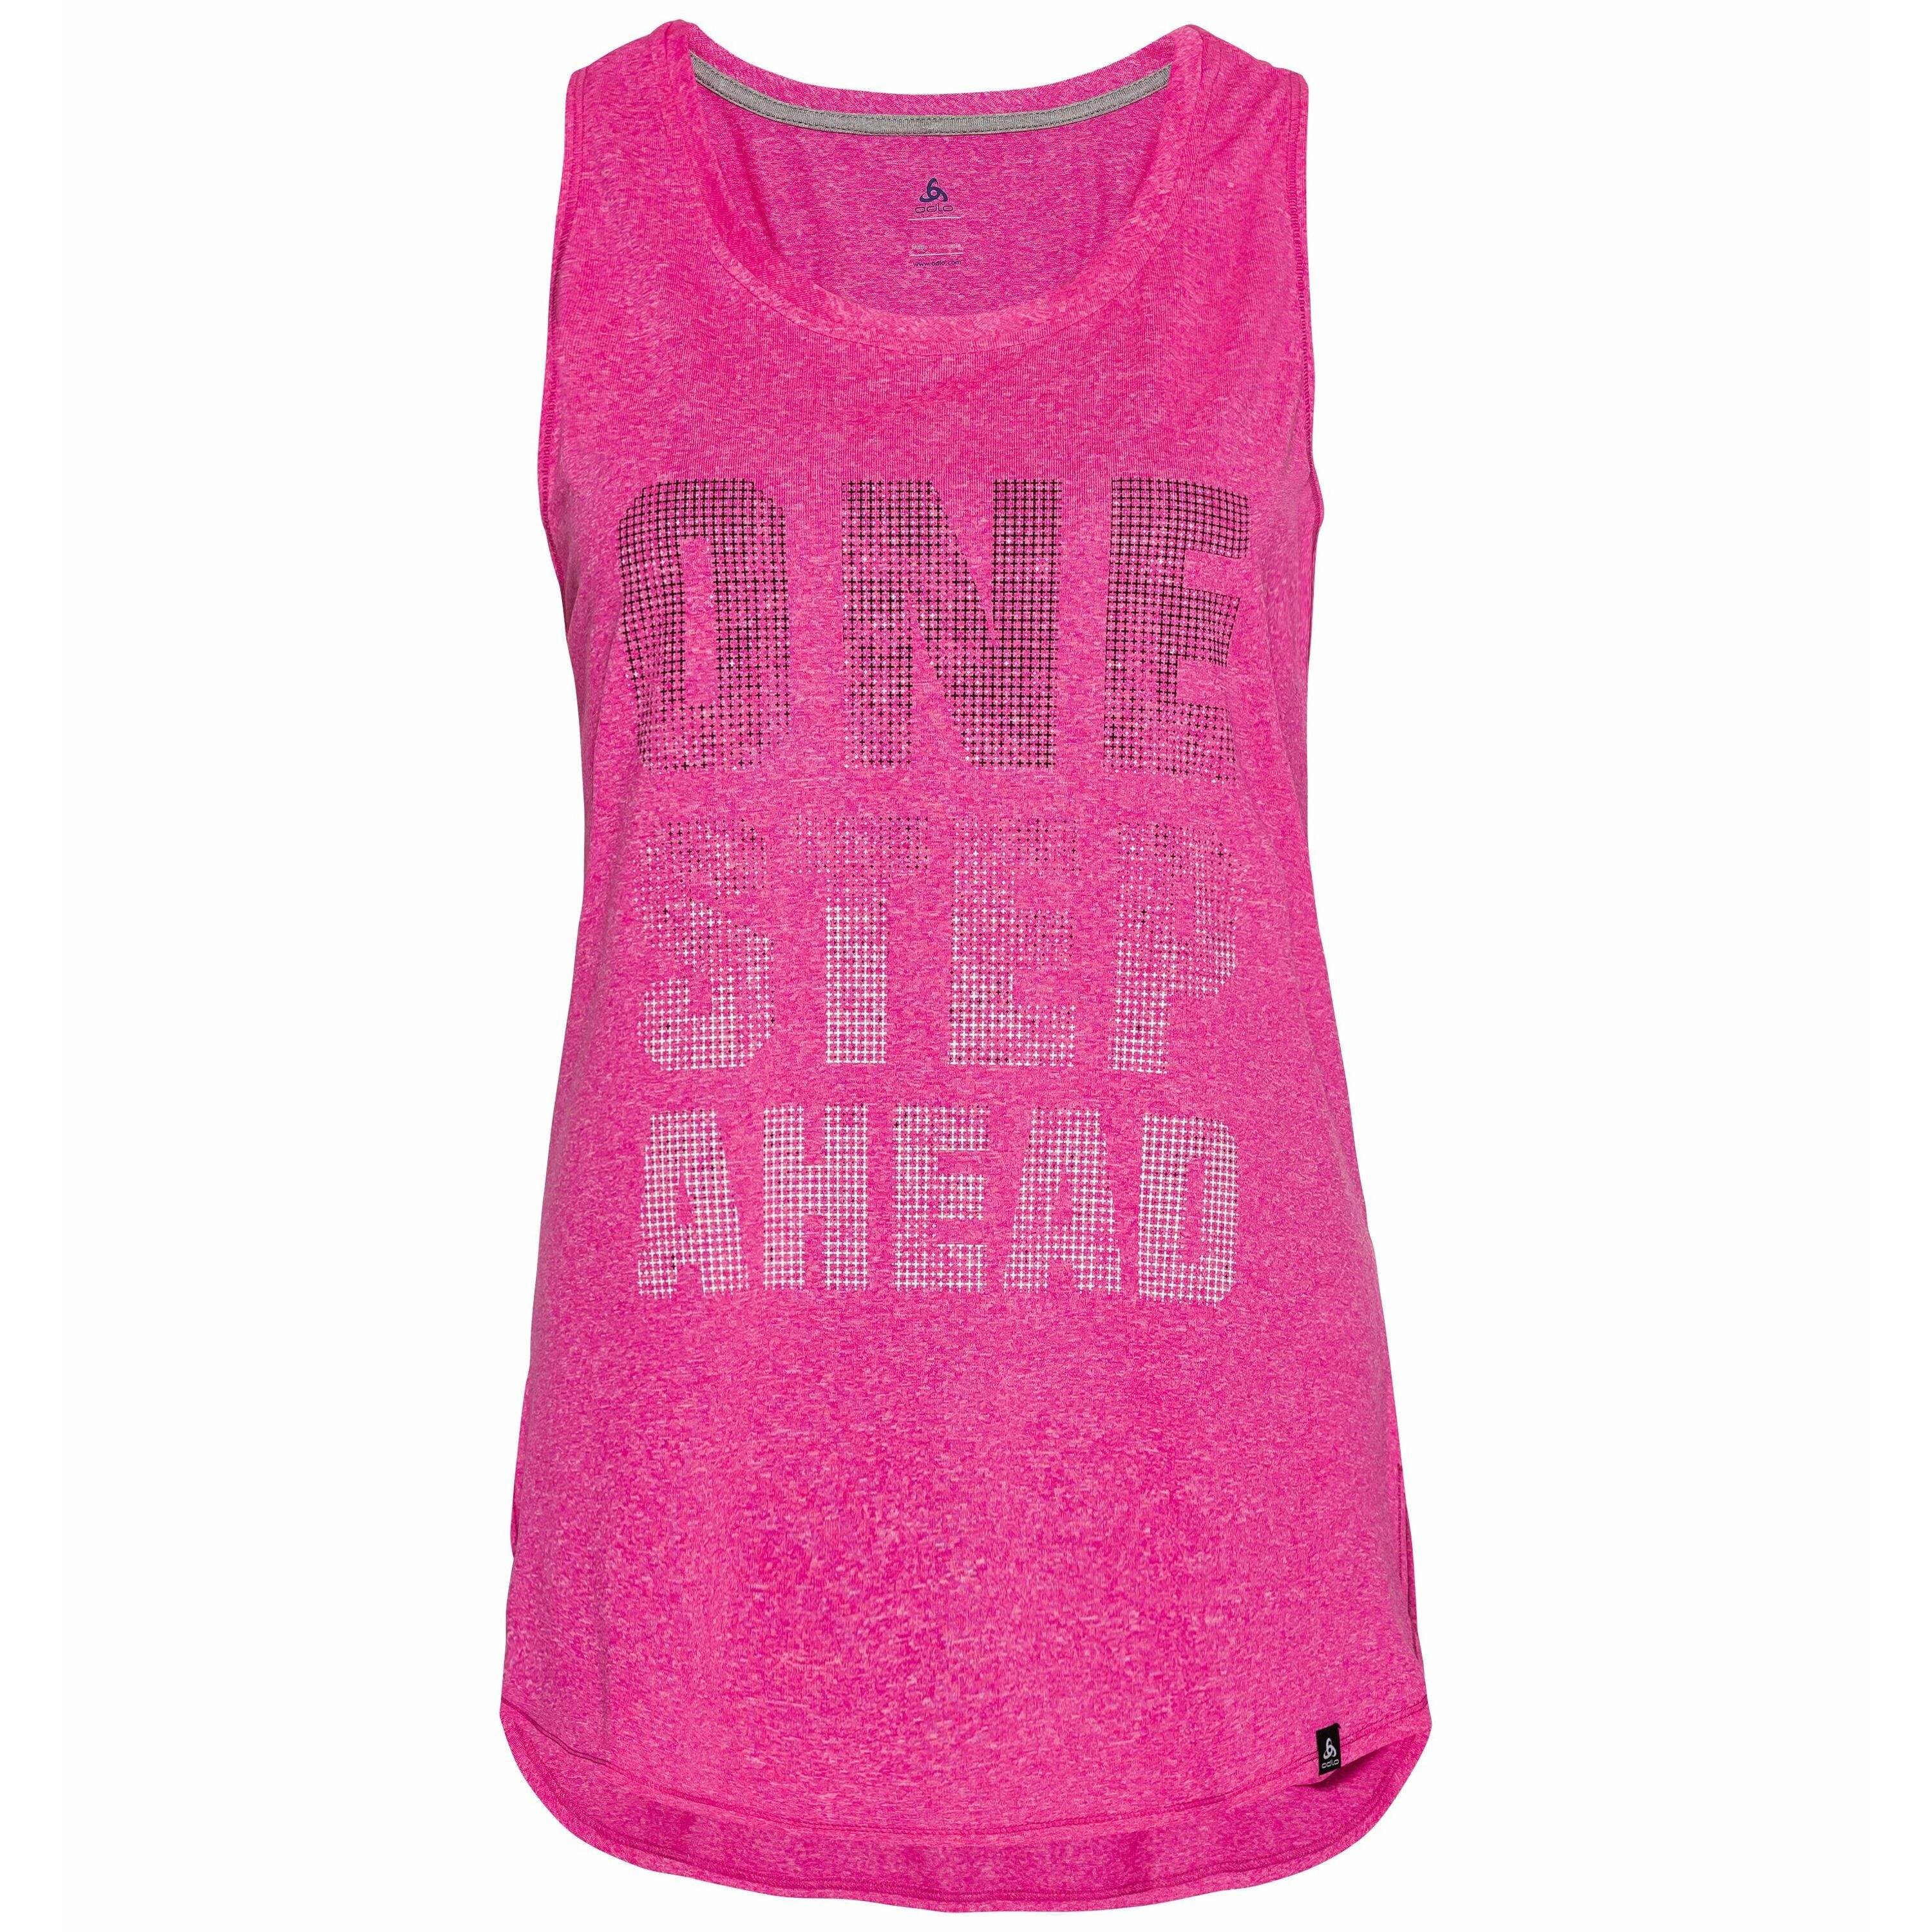 Odlo BL TOP HELLE Unterhemd mit Rundhalsausschnitt, female, pink glo melange with TRAIN print FW17, XS